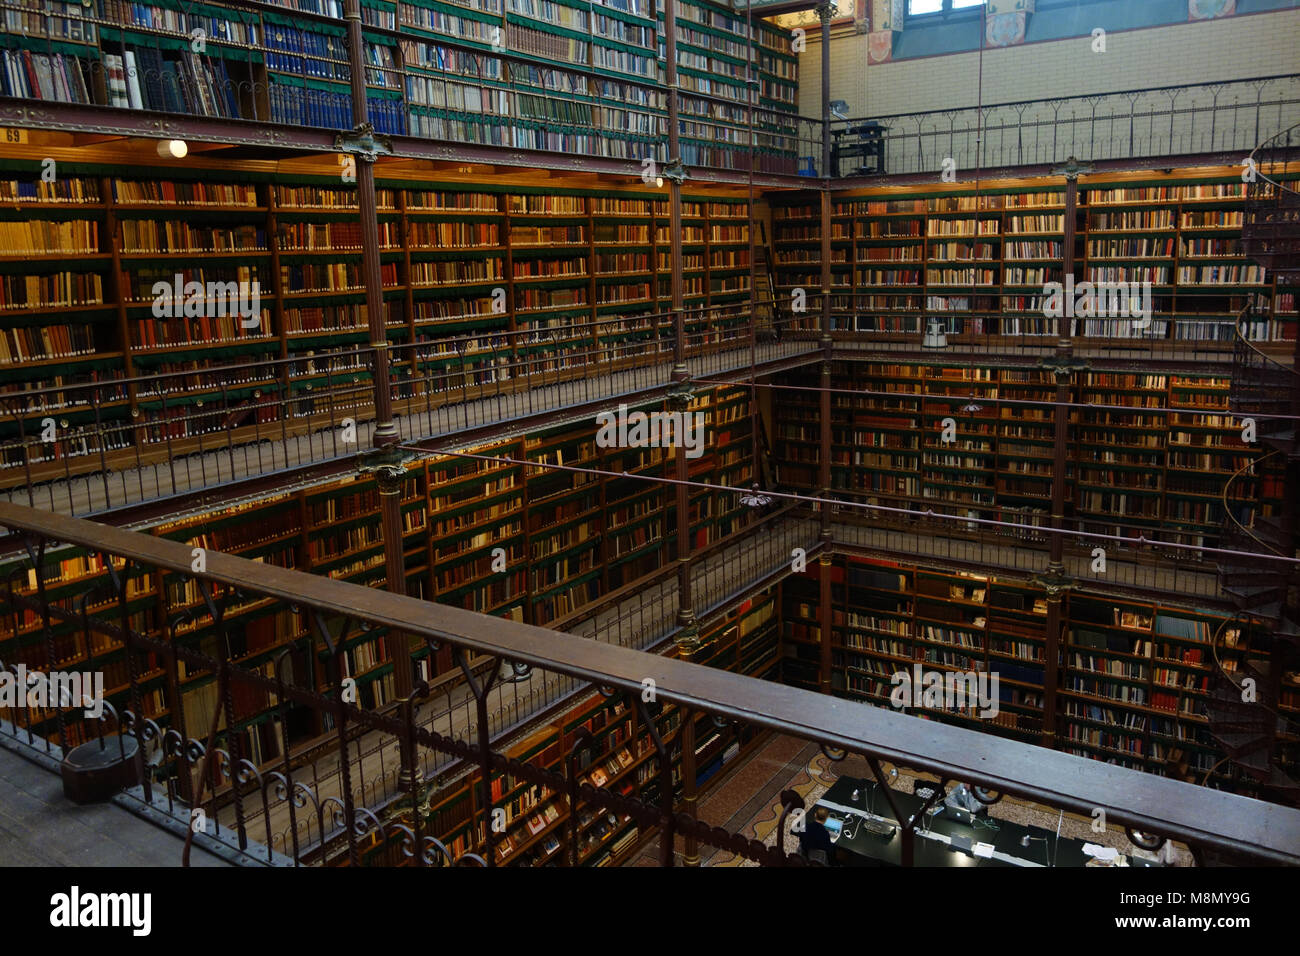 Dec 20, 2017 - La Bibliothèque du Rijksmuseum à Amsterdam. L'un des plus beaux et célèbres bibliothèques salles de lecture dans le monde Banque D'Images